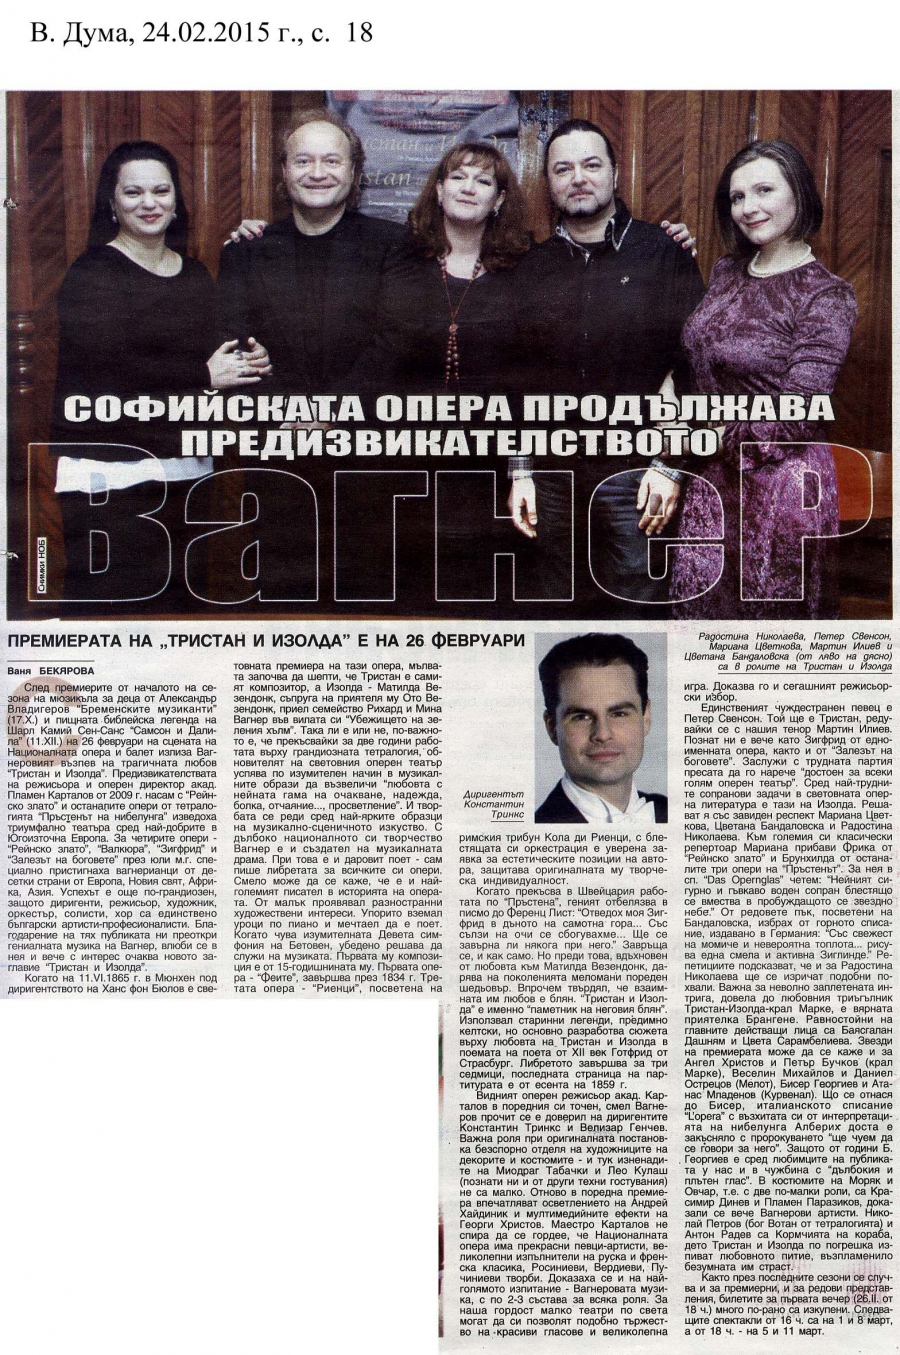 Софийската опера продължава предизвикателството Вагнер - в.Дума - 24.02.2015